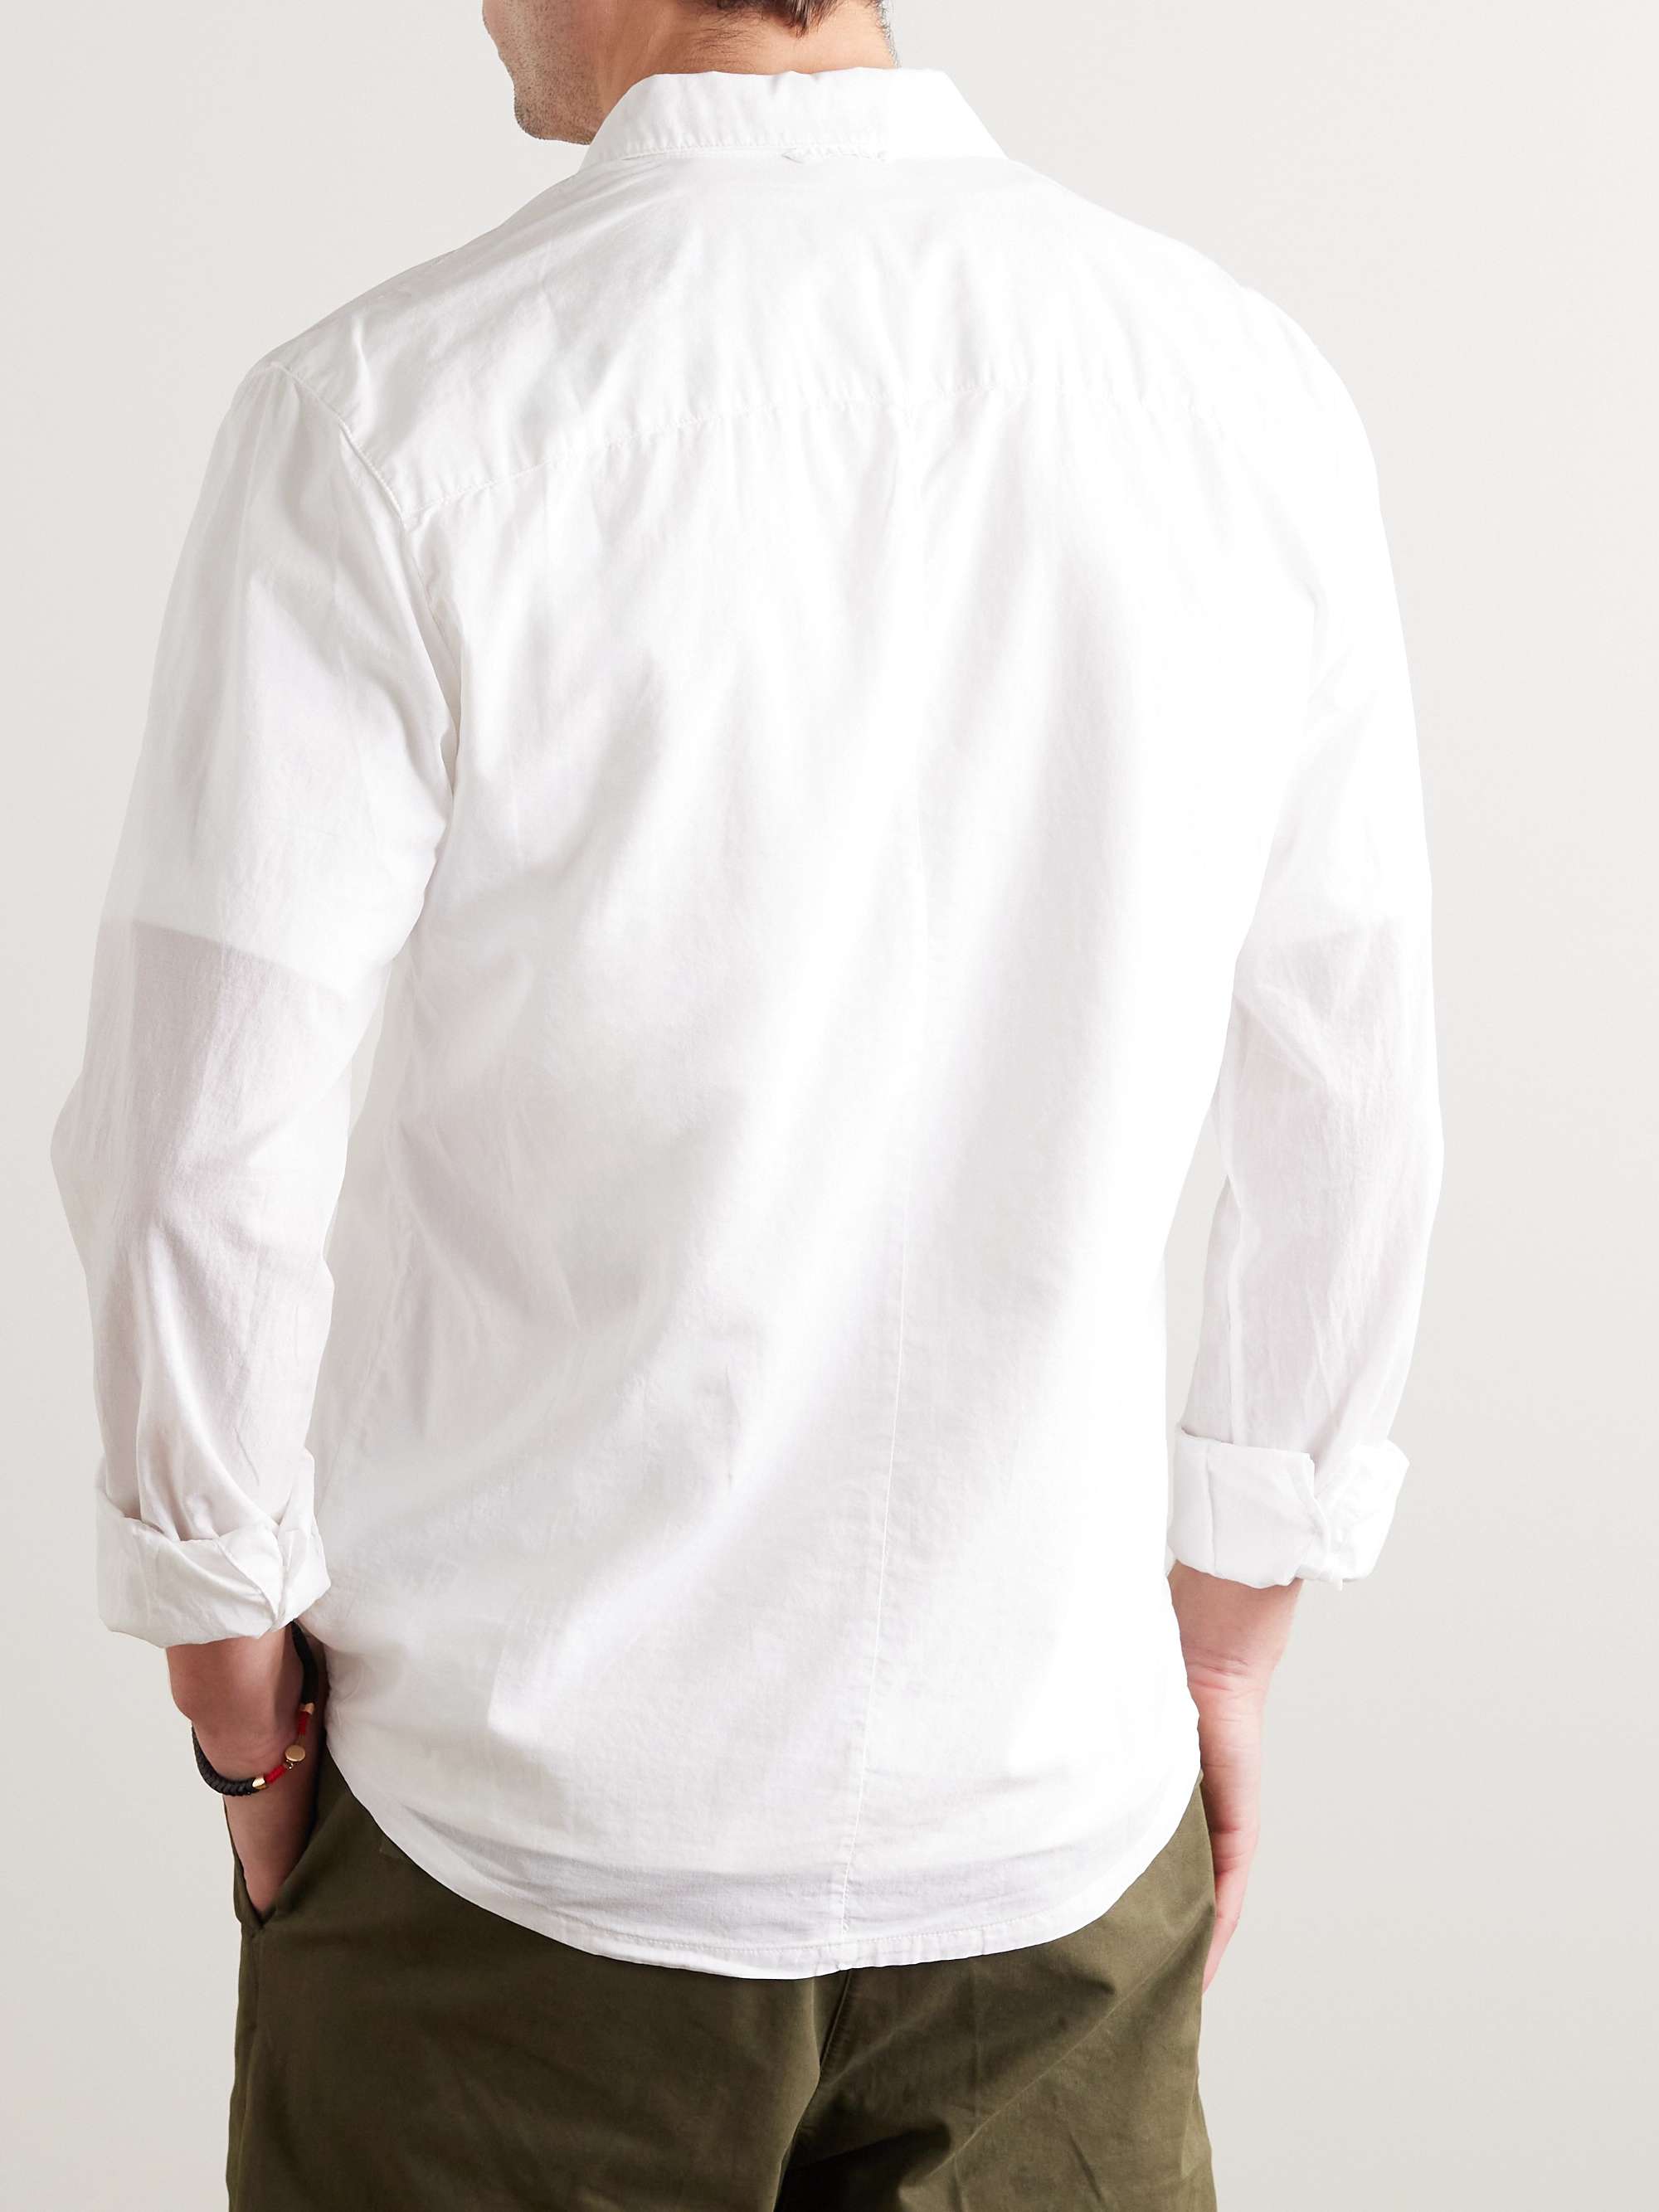 JAMES PERSE Standard Cotton Shirt